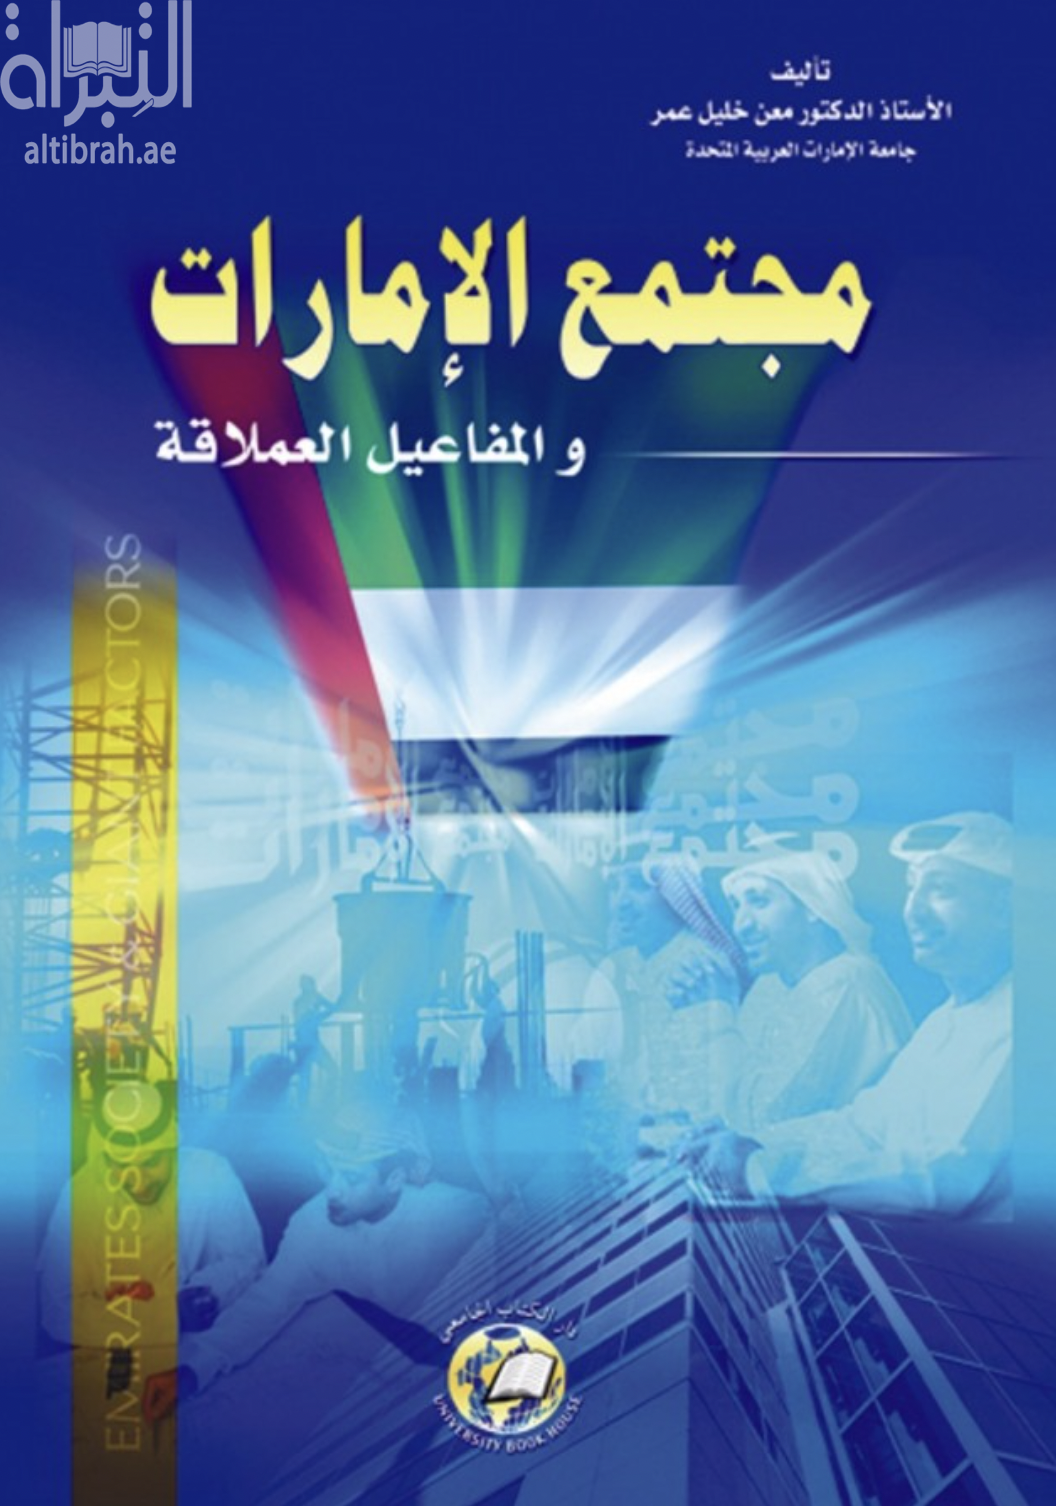 غلاف كتاب مجتمع الإمارات والمفاعيل العملاقة